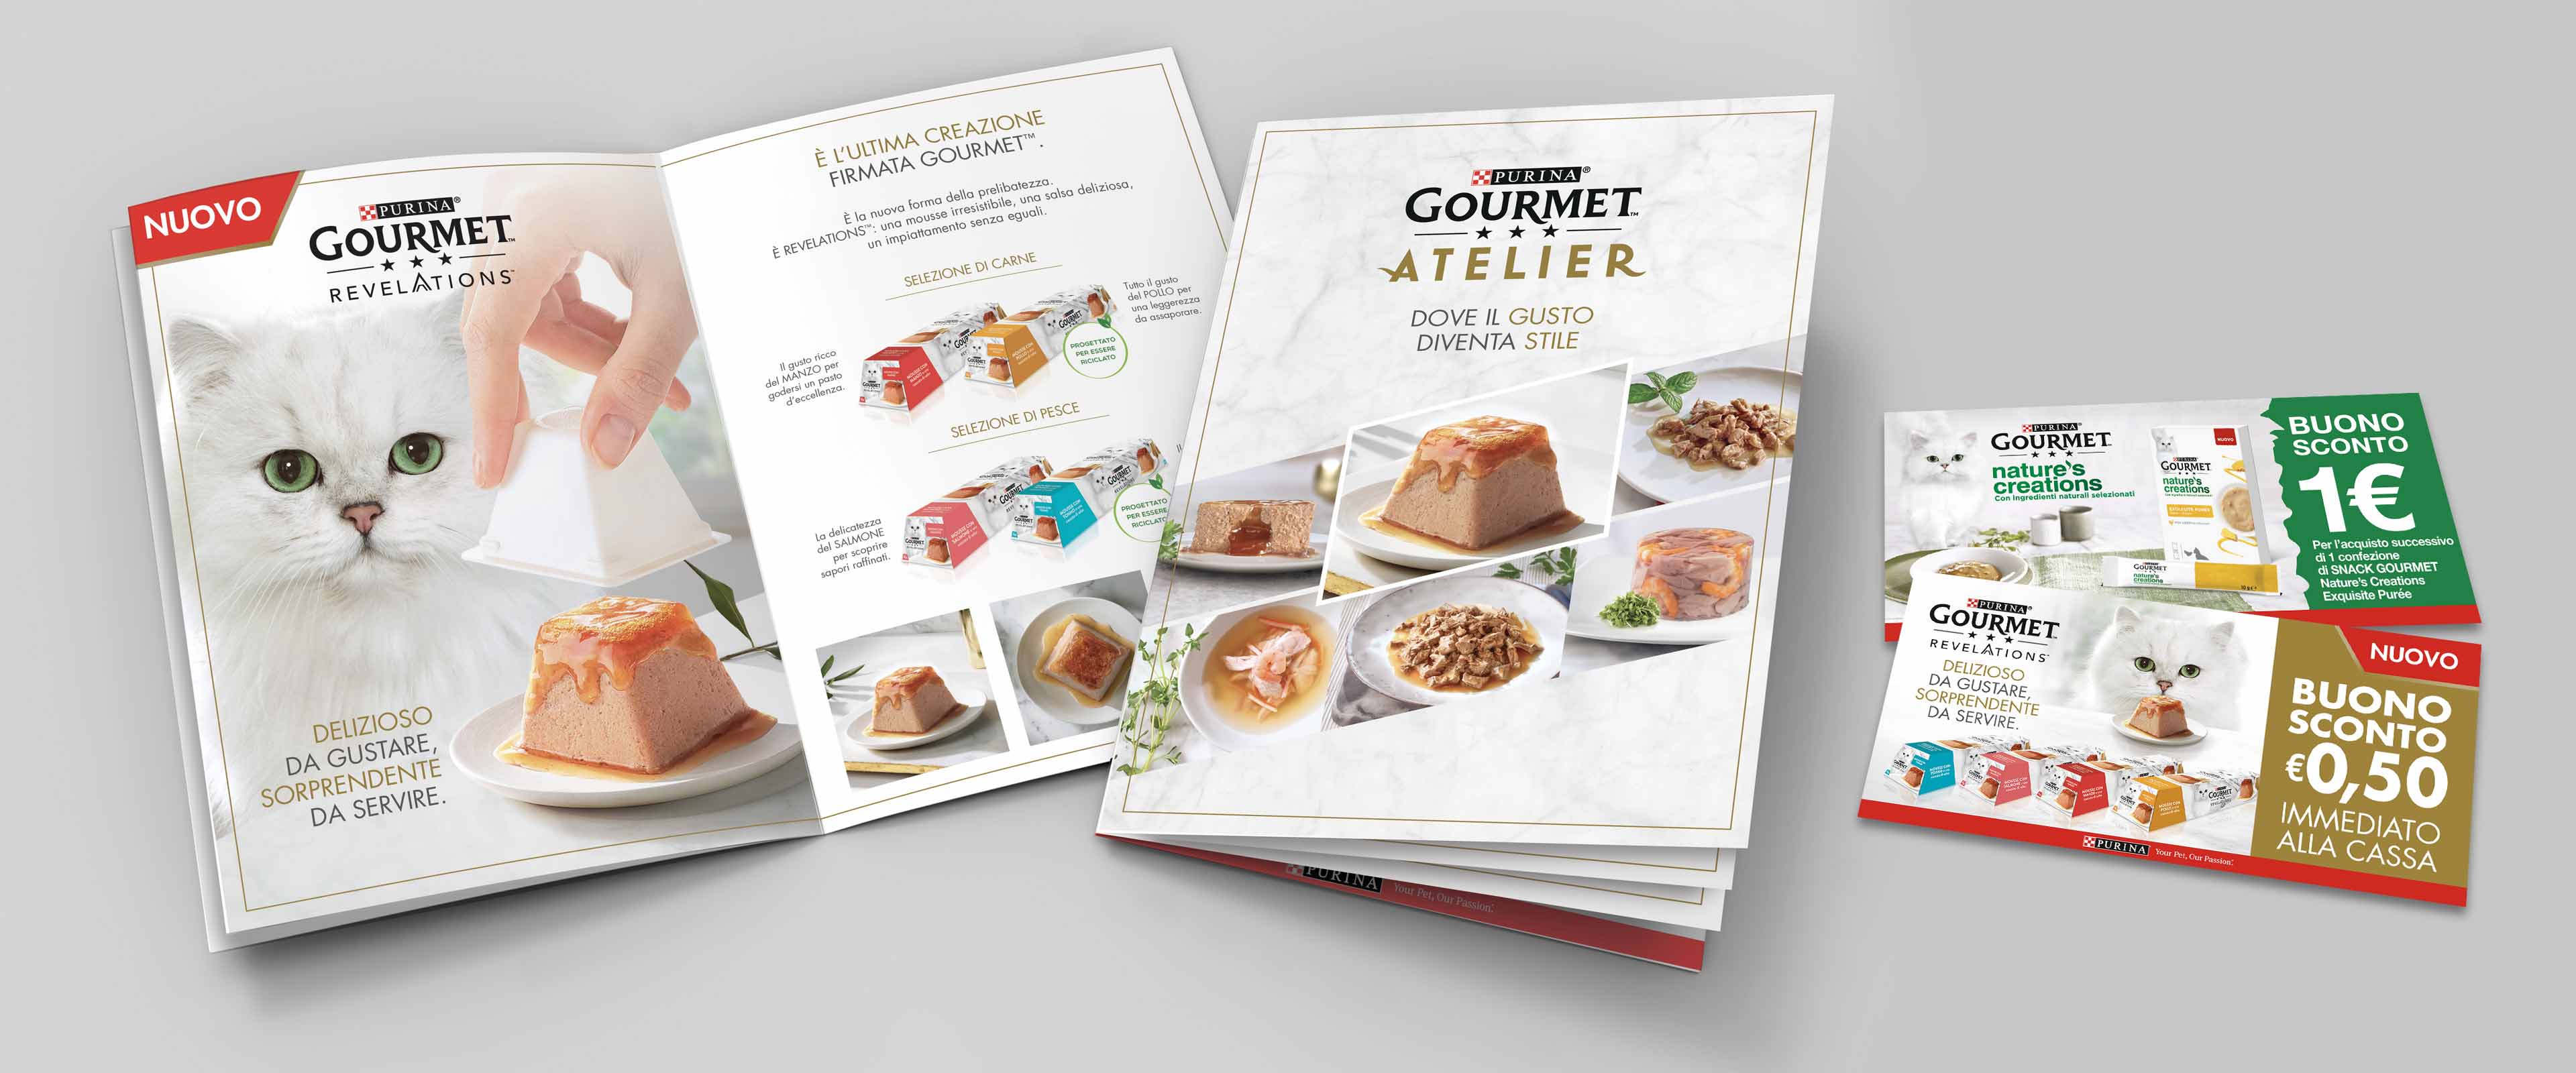 Brochure lancio Gourmet Atelier